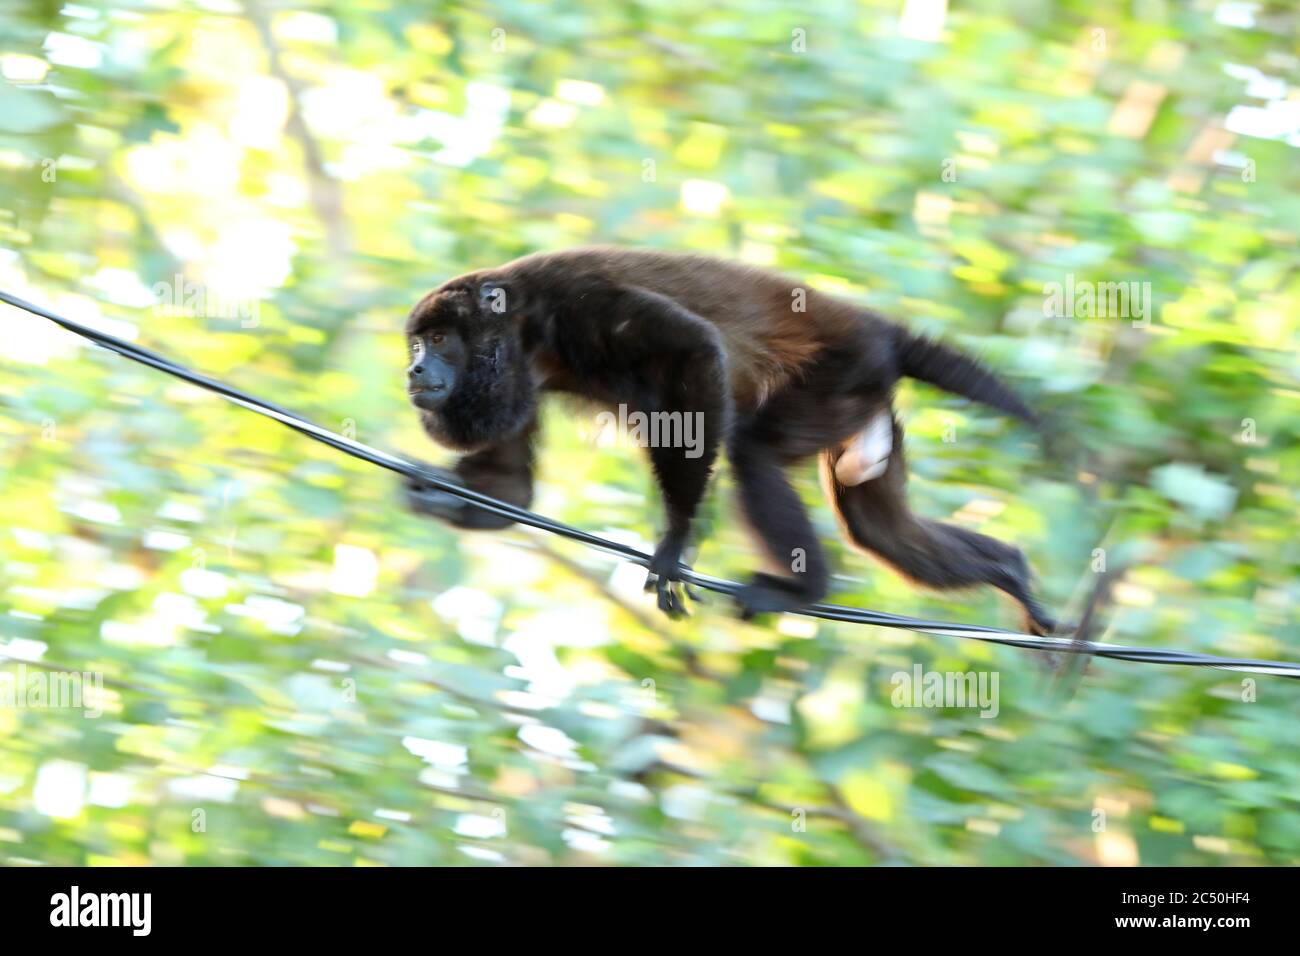 Hurler d'aigue (Alouatta palliata), marchant sur une corde dans la forêt, vue latérale, Costa Rica Banque D'Images